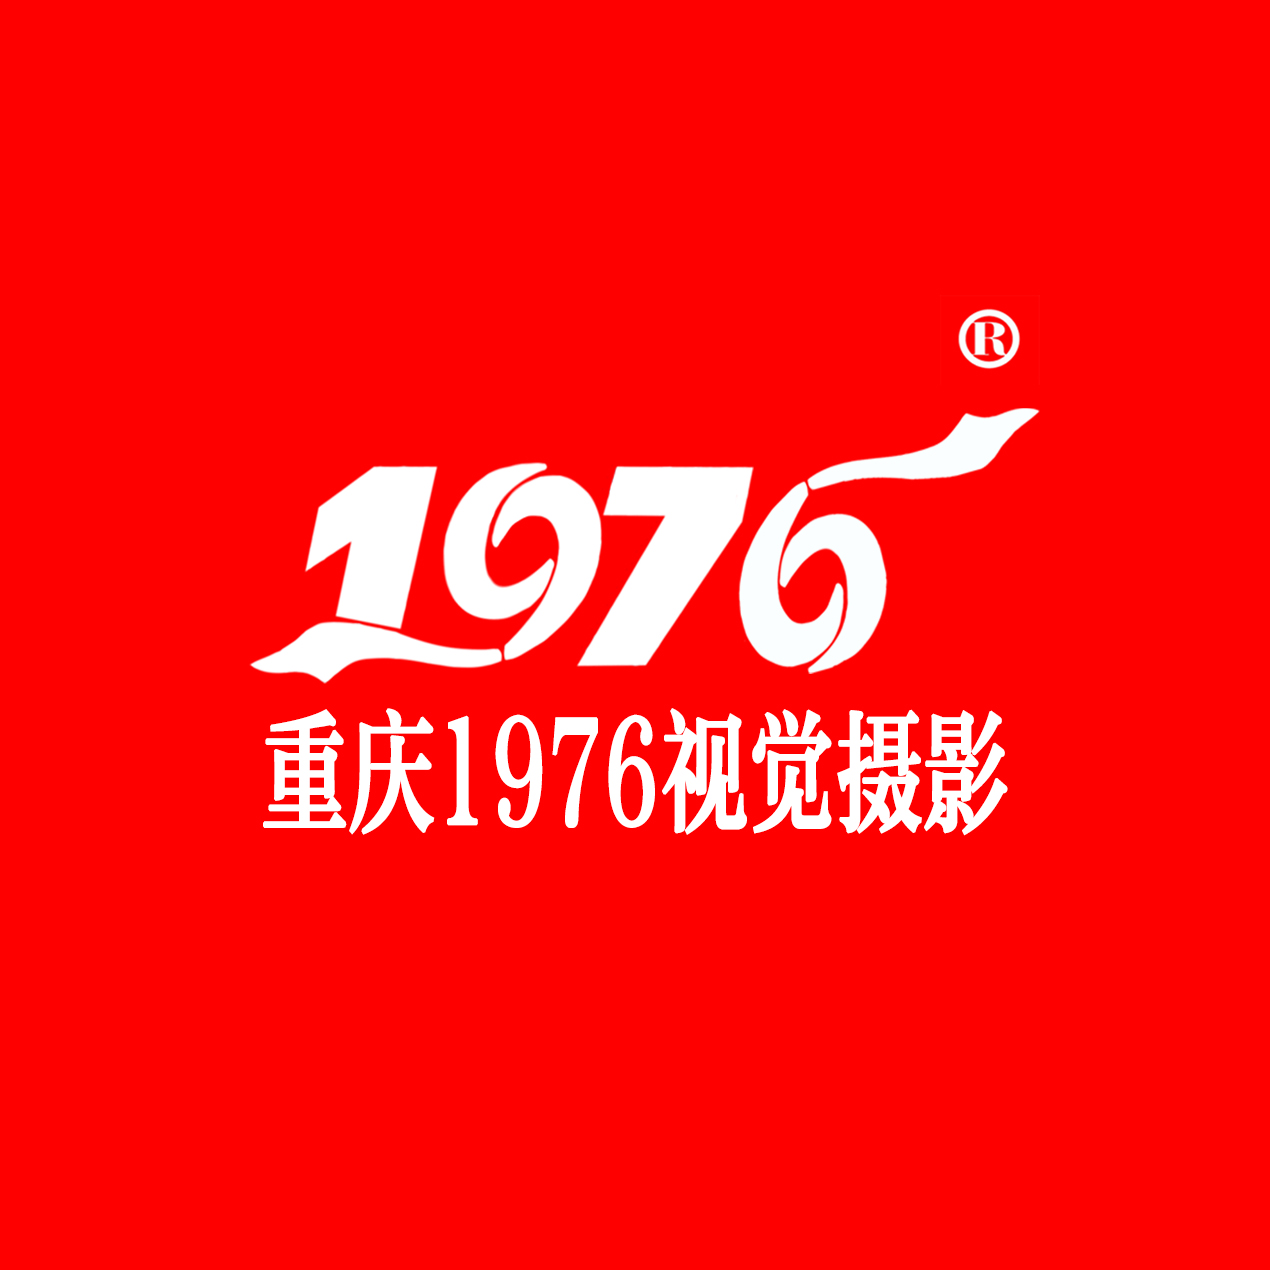 重慶1976視覺攝影